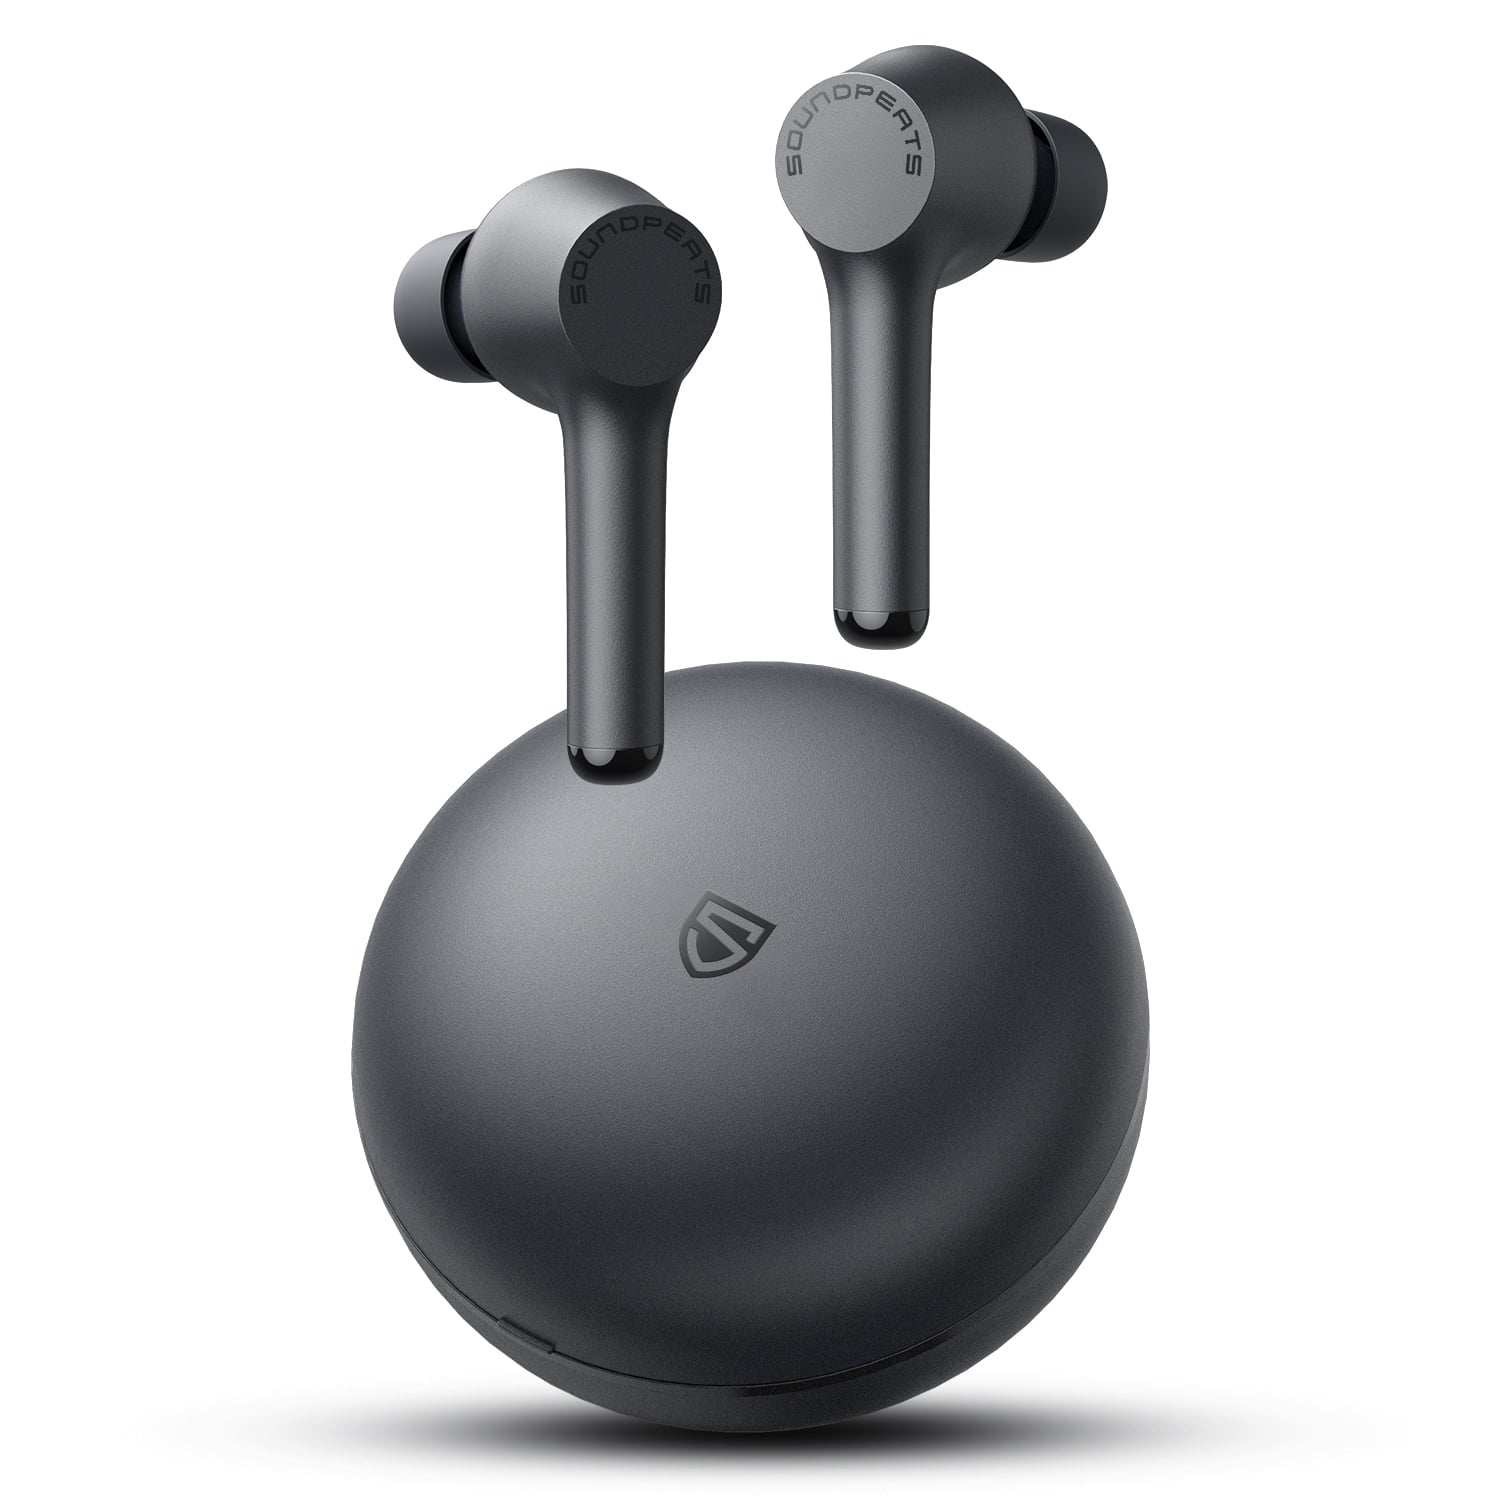 soundpeats-mac-tws-earphone-stereo-earphone-wireless-earbuds-tws-wireless-earphones-stereo-headphones-ipx7-waterproof-bluetooth-5-0